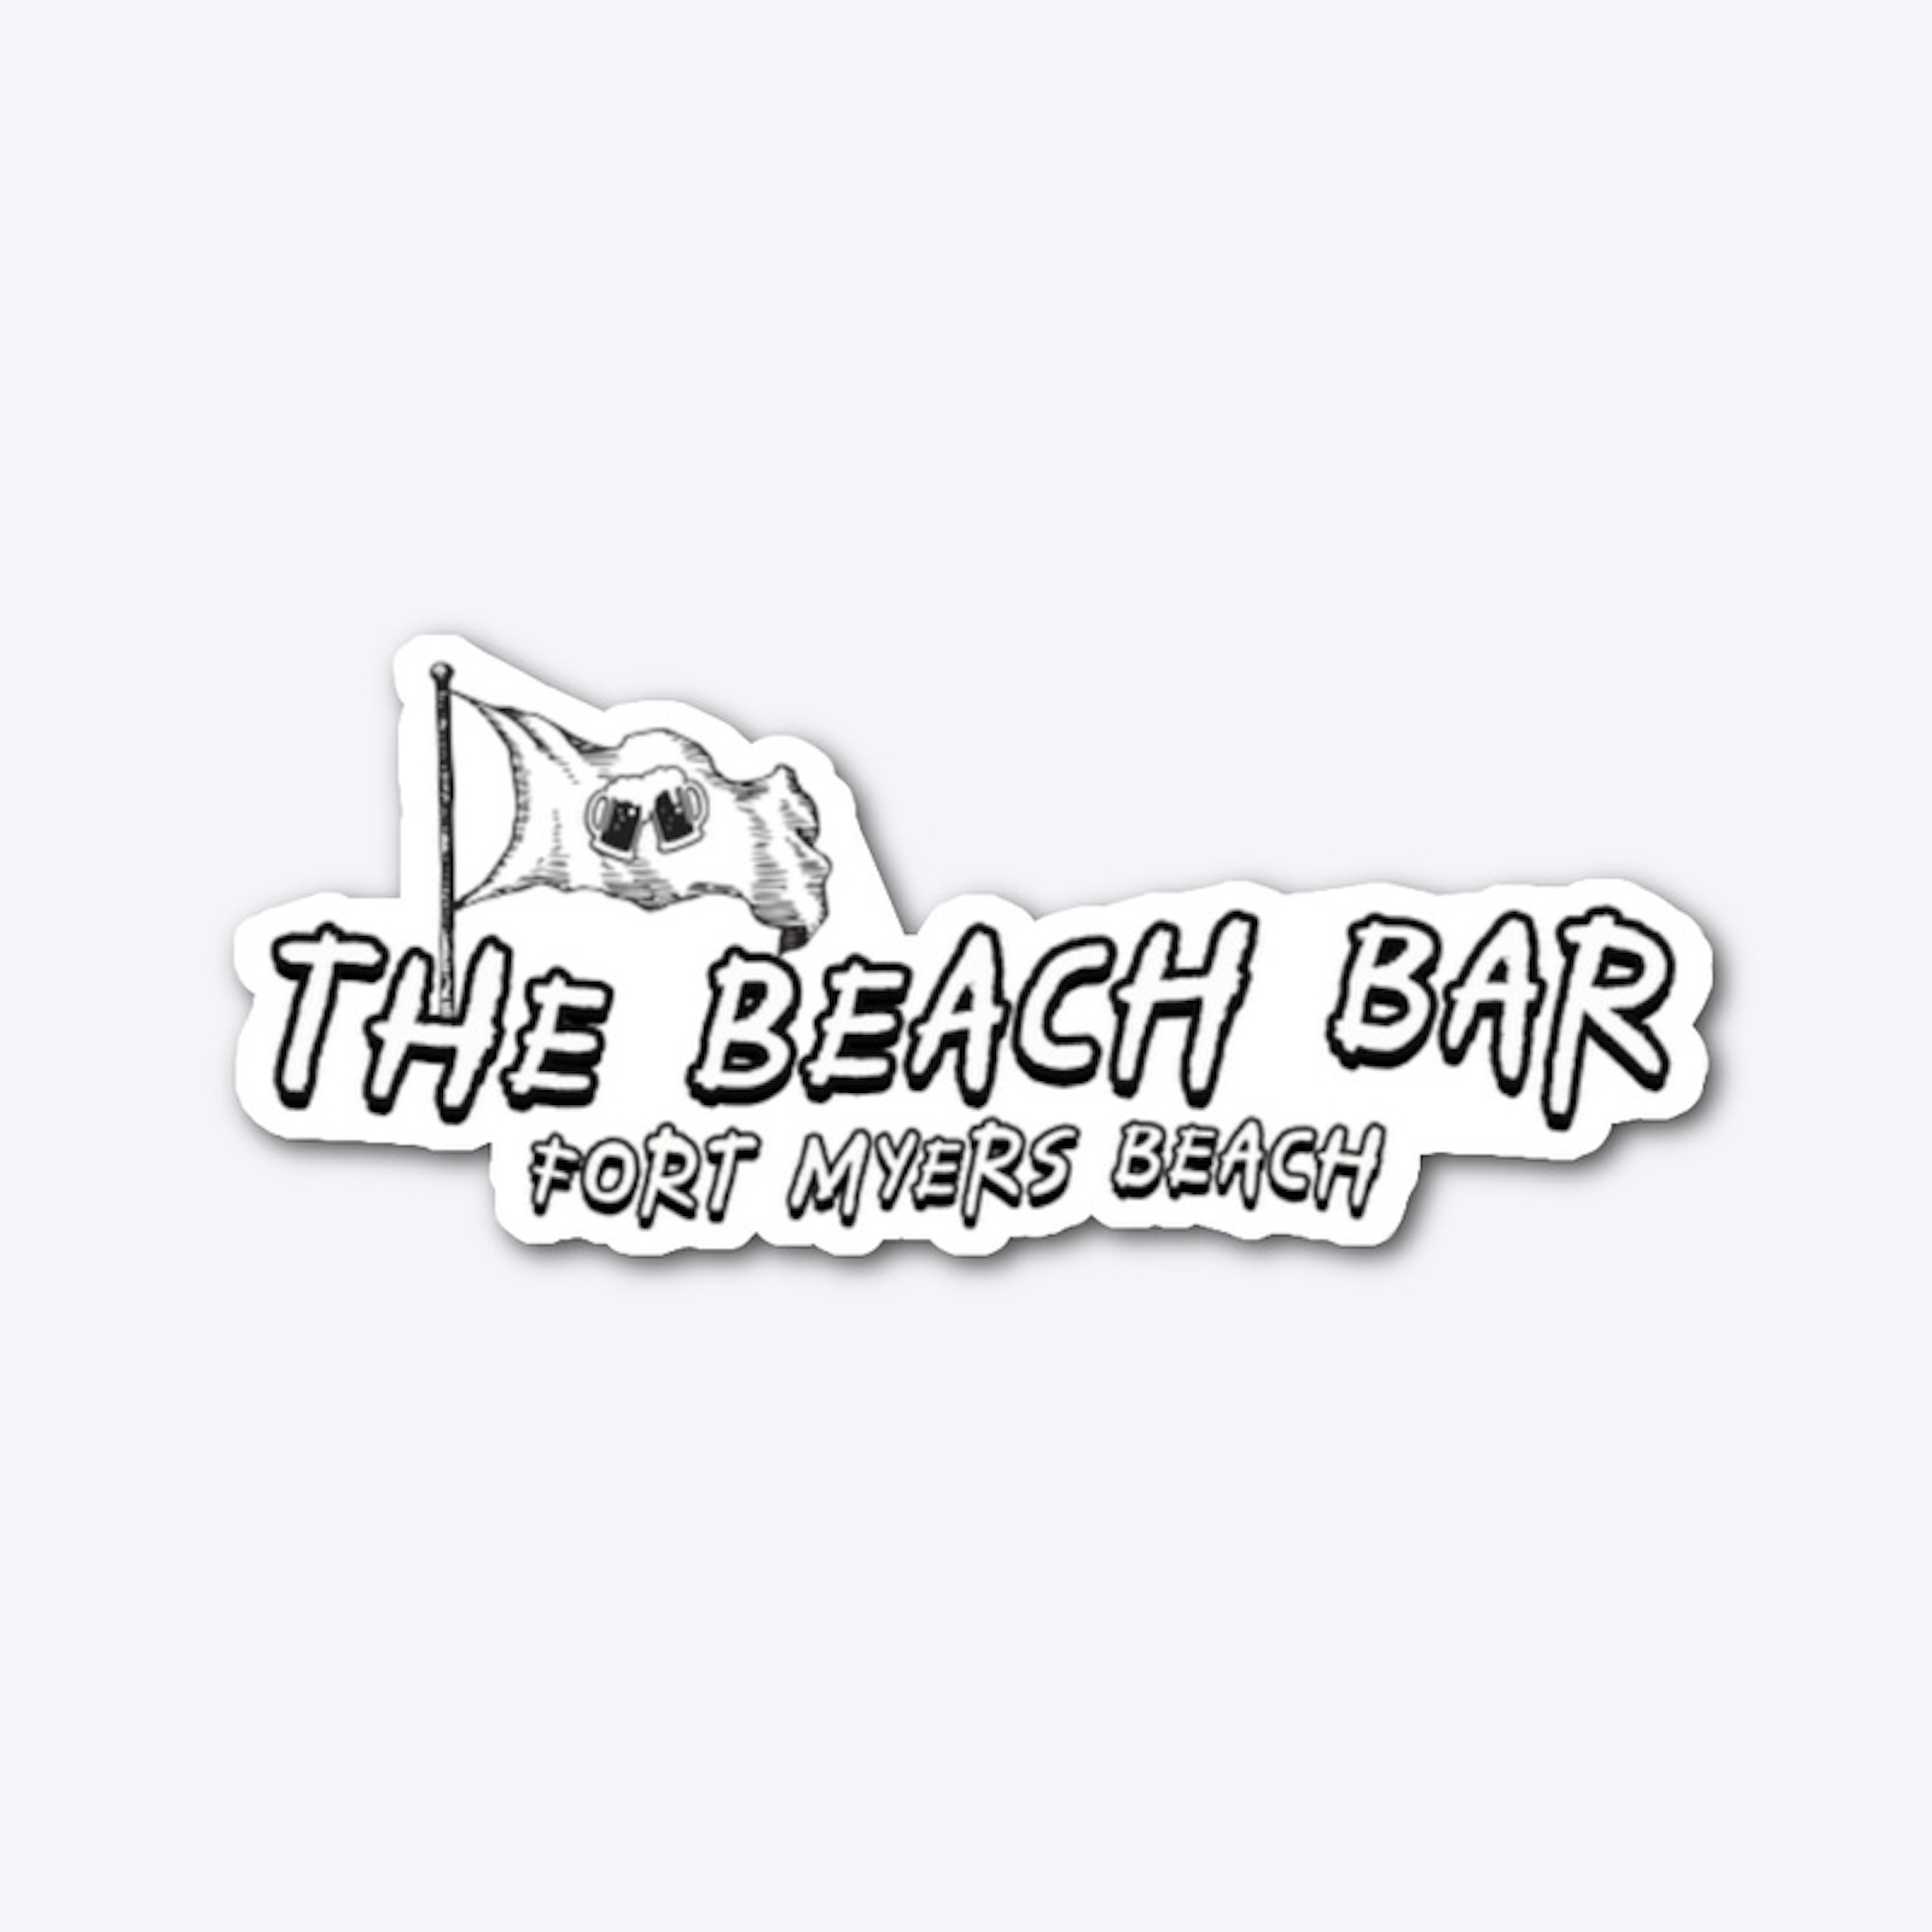 The Beach Bar Captain Landed